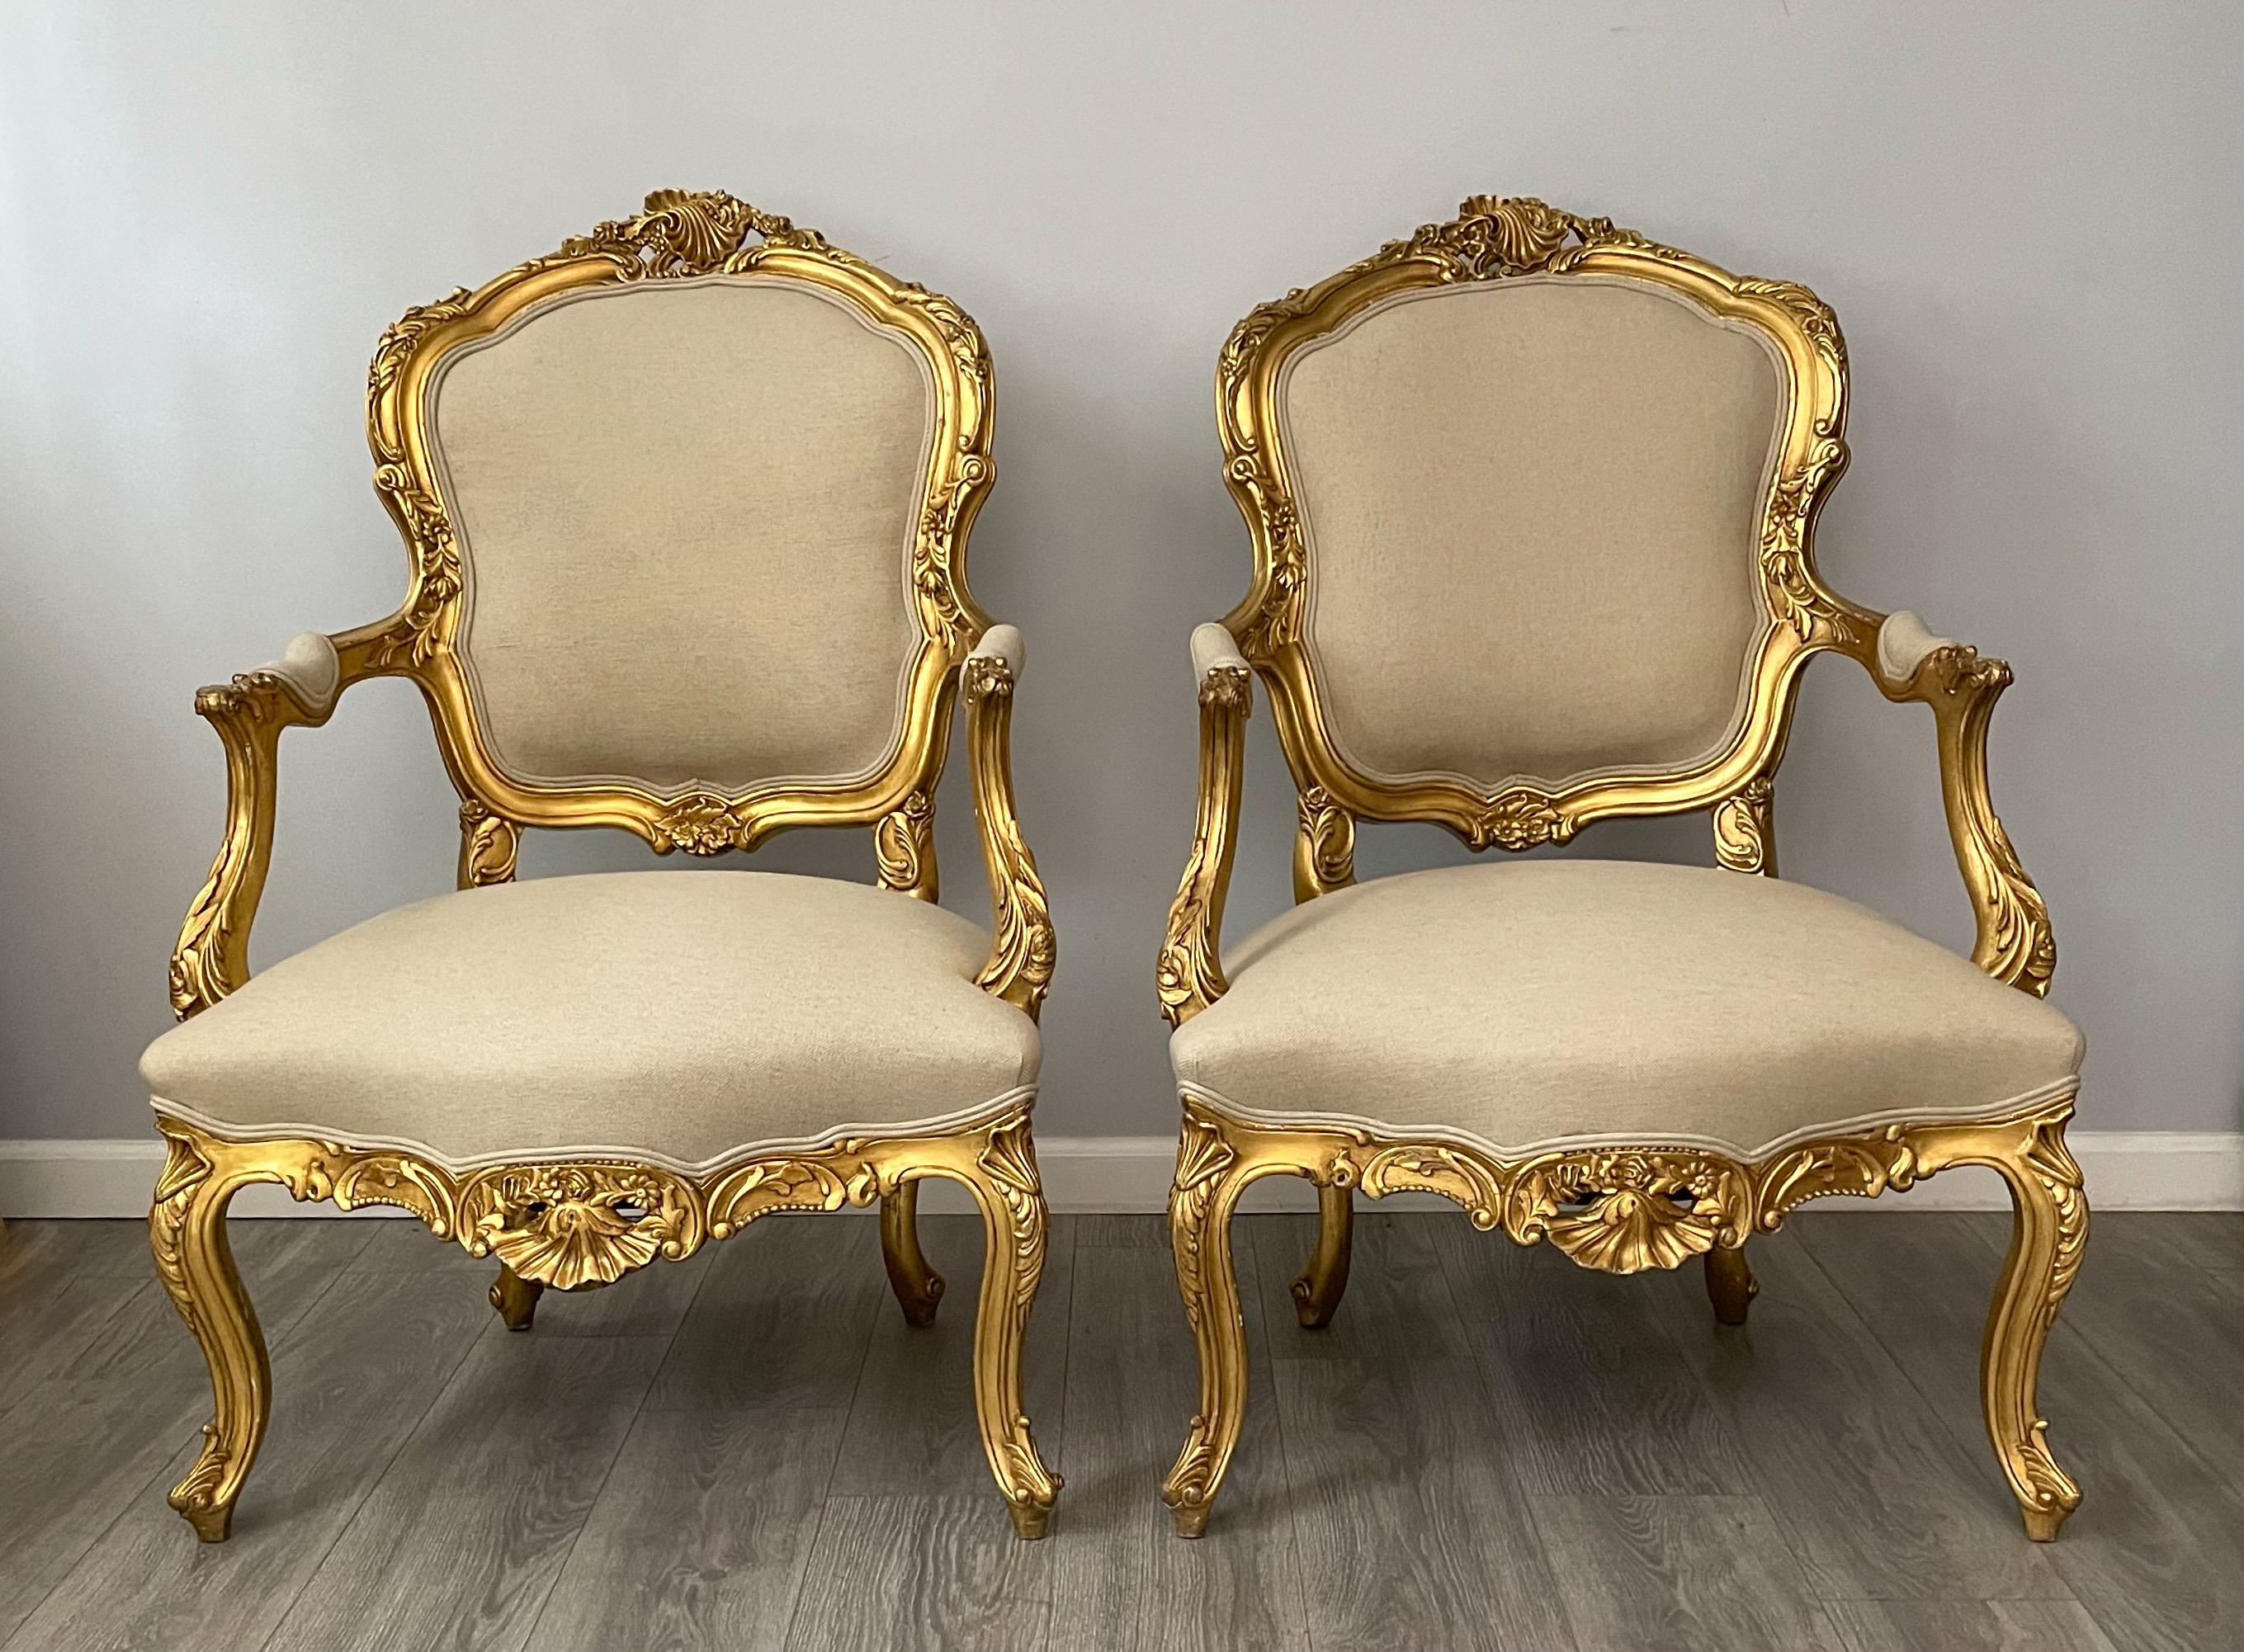 Fabuleuse paire de fauteuils italiens des années 1940 de style rococo. 

Chacune des chaises se compose d'un cadre en bois doré magnifiquement sculpté et d'un revêtement en lin belge neuf. 

Perte mineure de la dorure correspondant à l'âge. Les